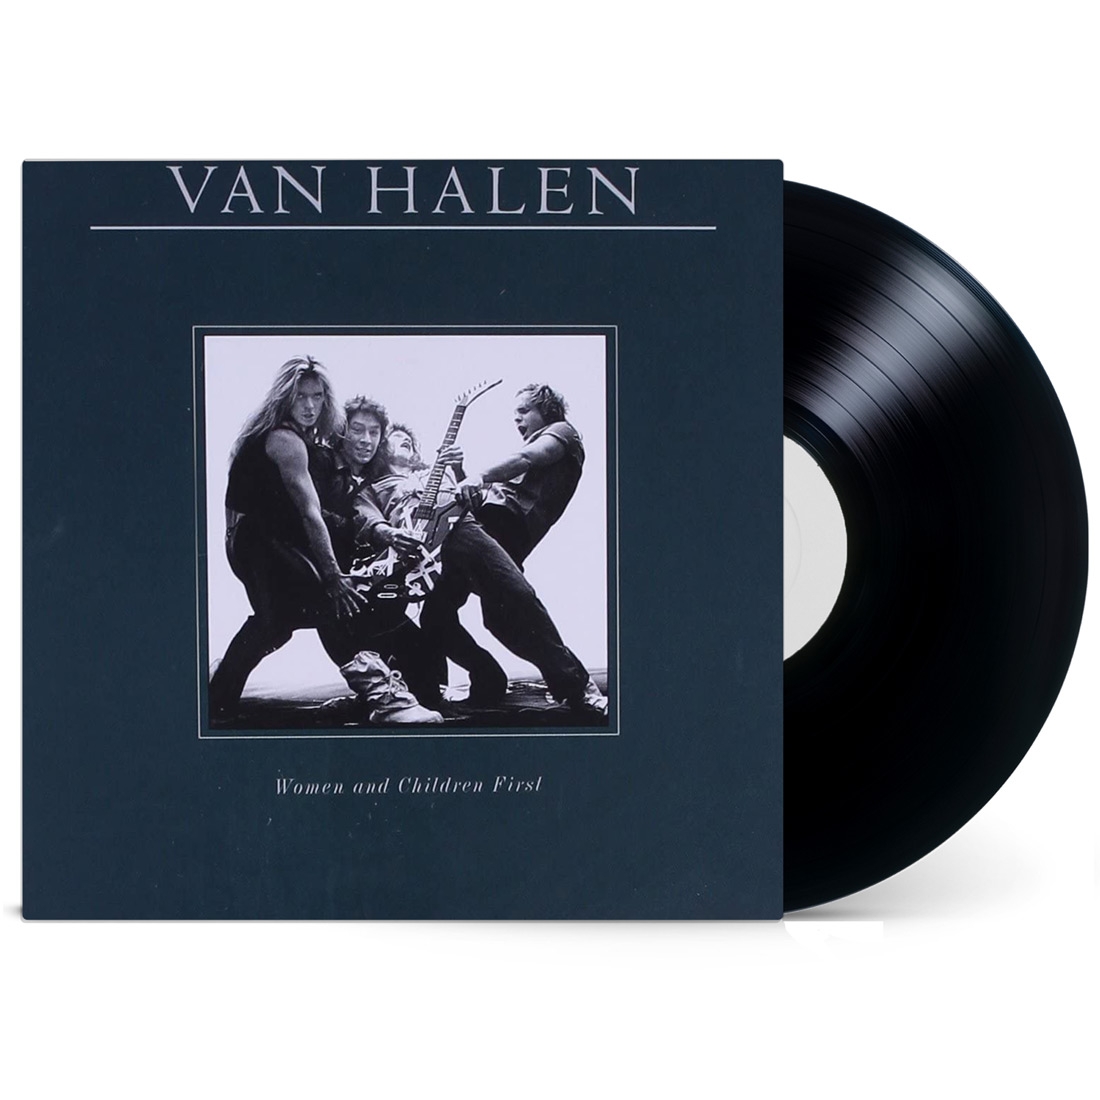 VINILO VAN HALEN / WOMEN & CHILDREN FIRST ALBUM PLATINUM 1LP